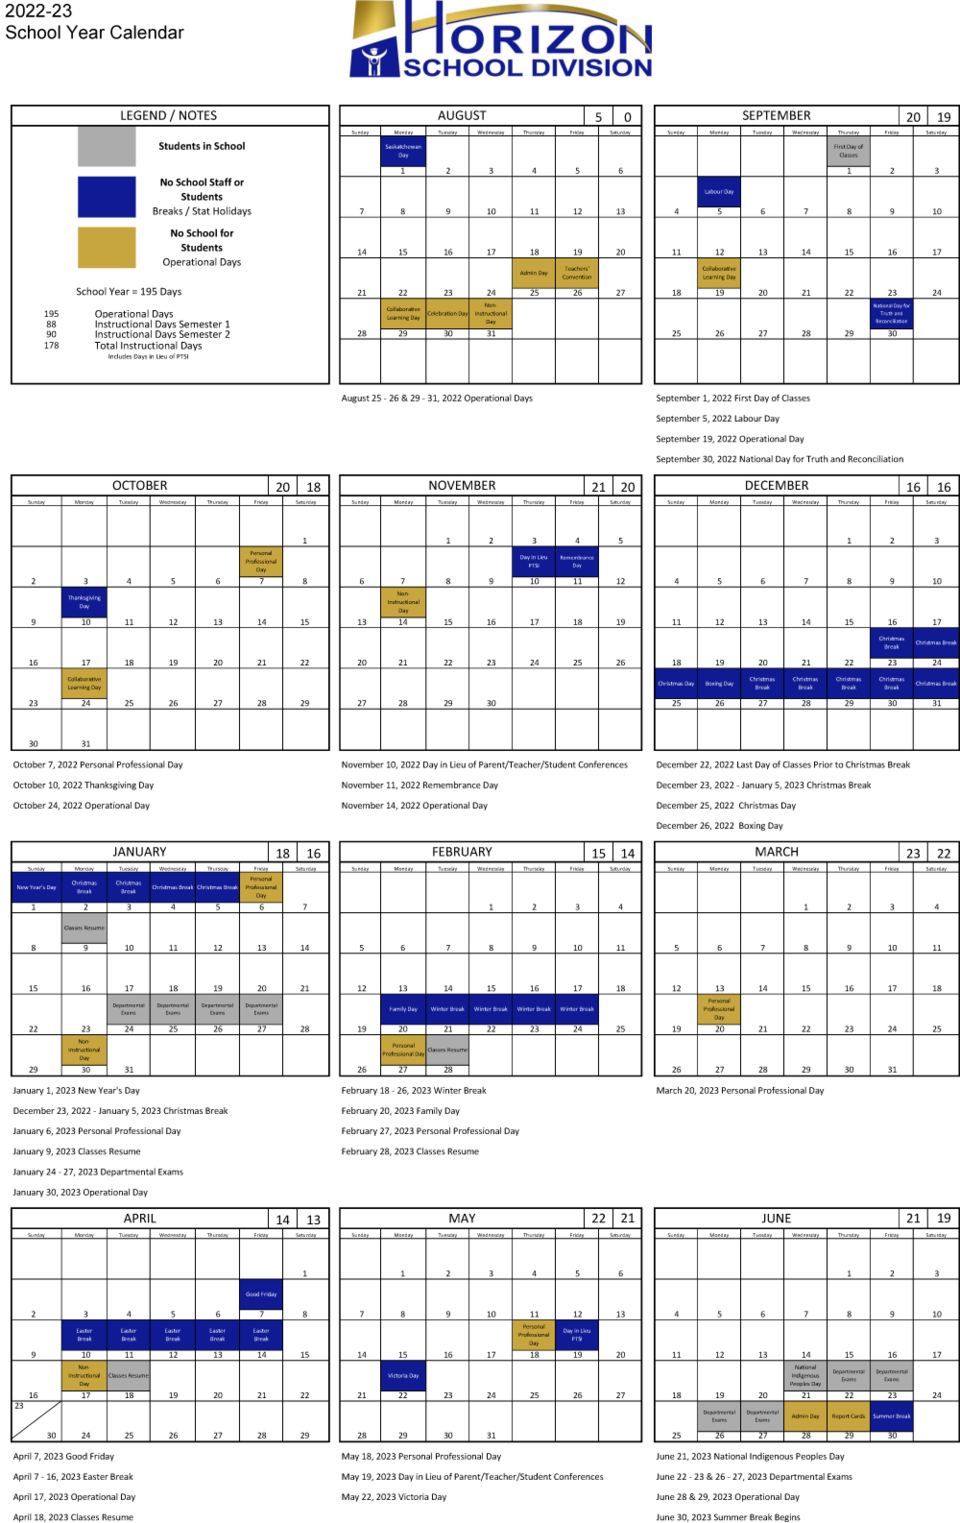 Horizon SD School Calendar 2022-23